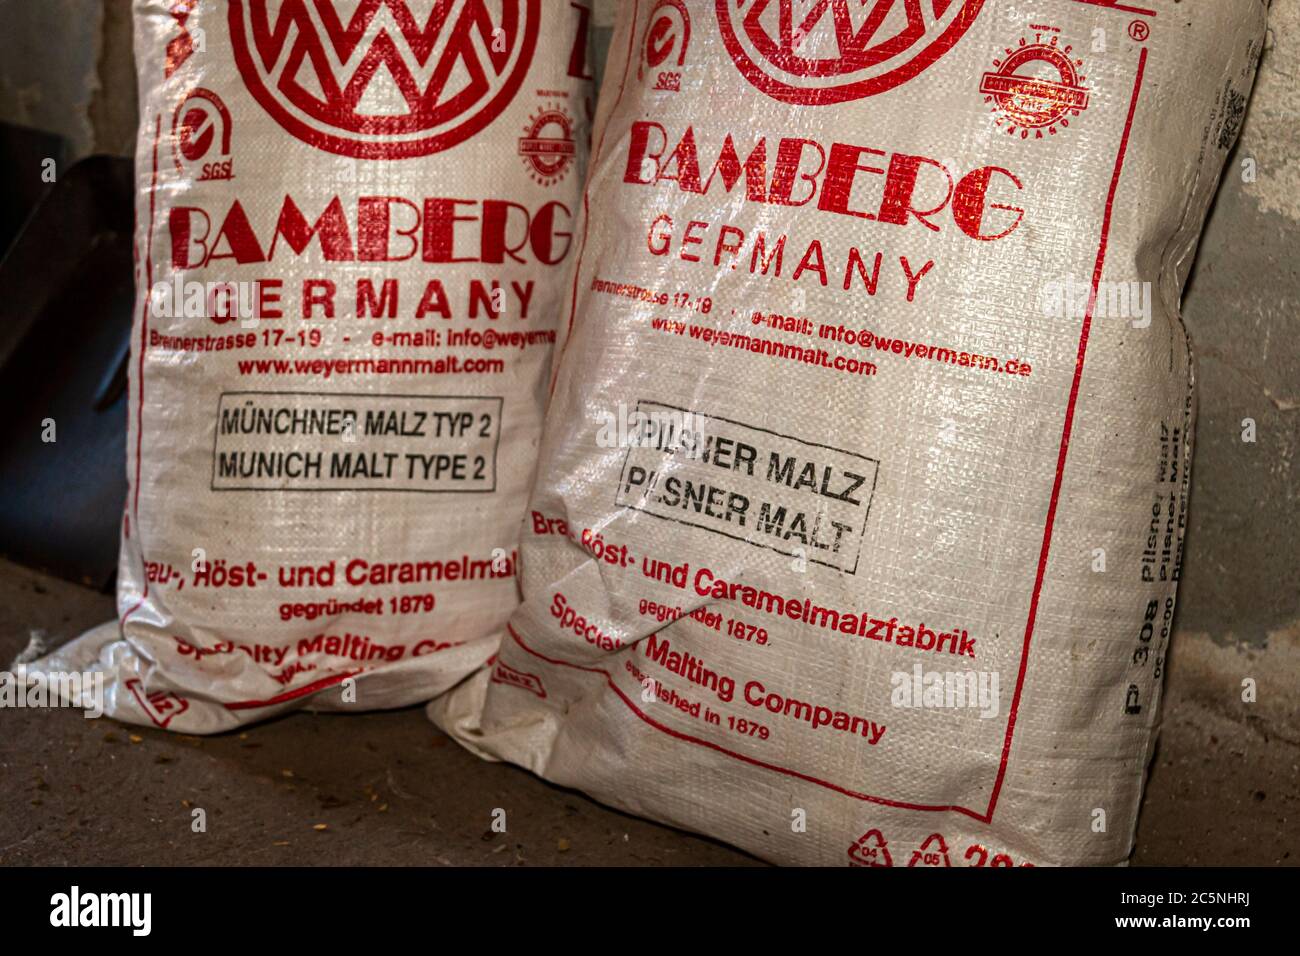 Brassage de malt de la société Weyermann à Bamberg trouvé dans la brasserie commune de Zoigl à Windischeschenbach, Allemagne Banque D'Images